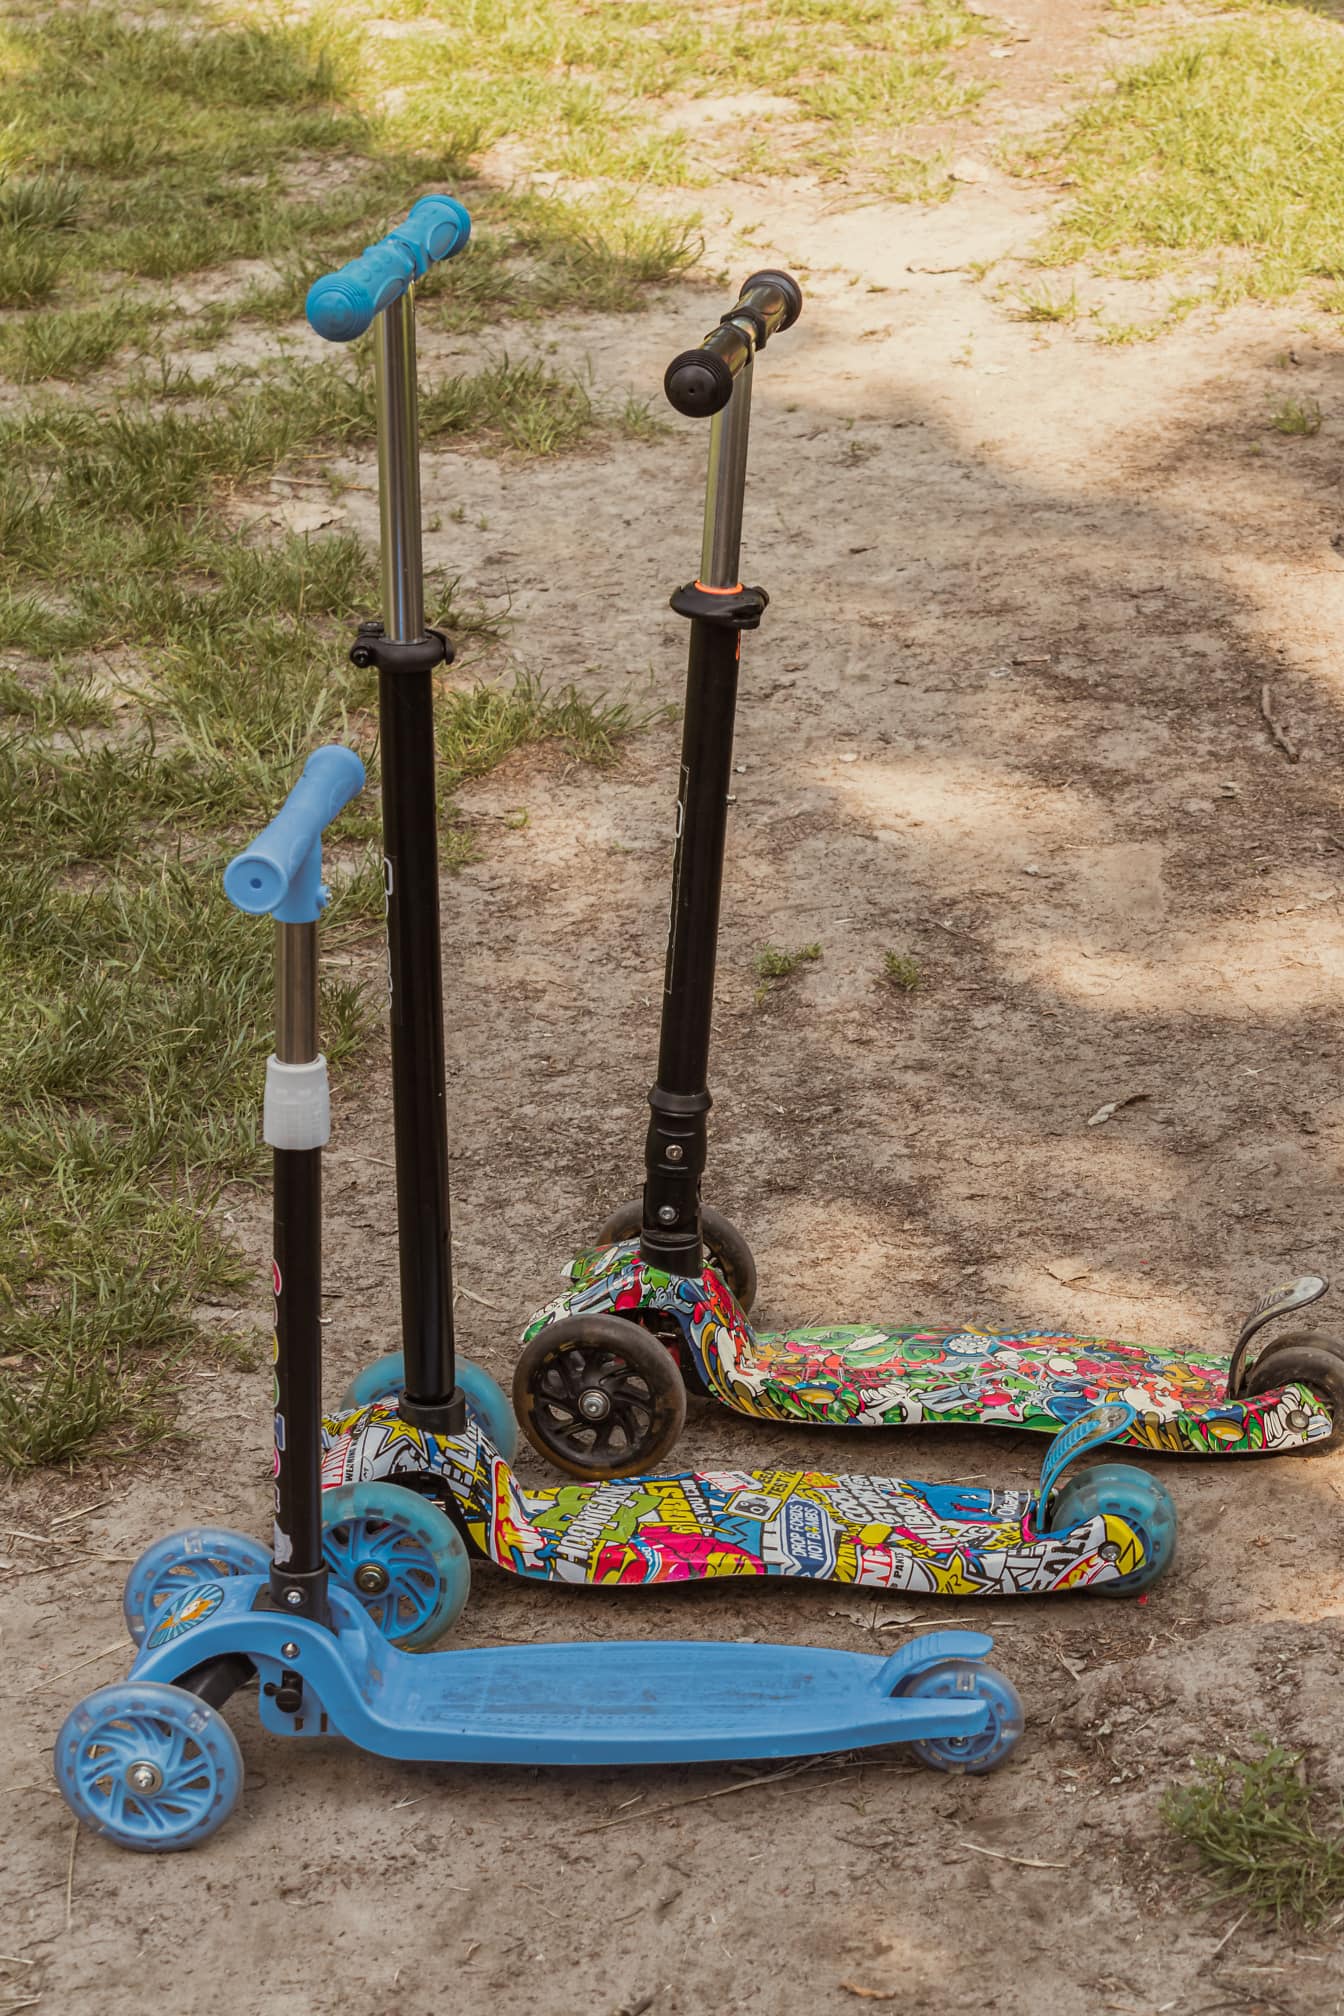 Cận cảnh ba món đồ chơi xe tay ga đầy màu sắc trên mặt đất